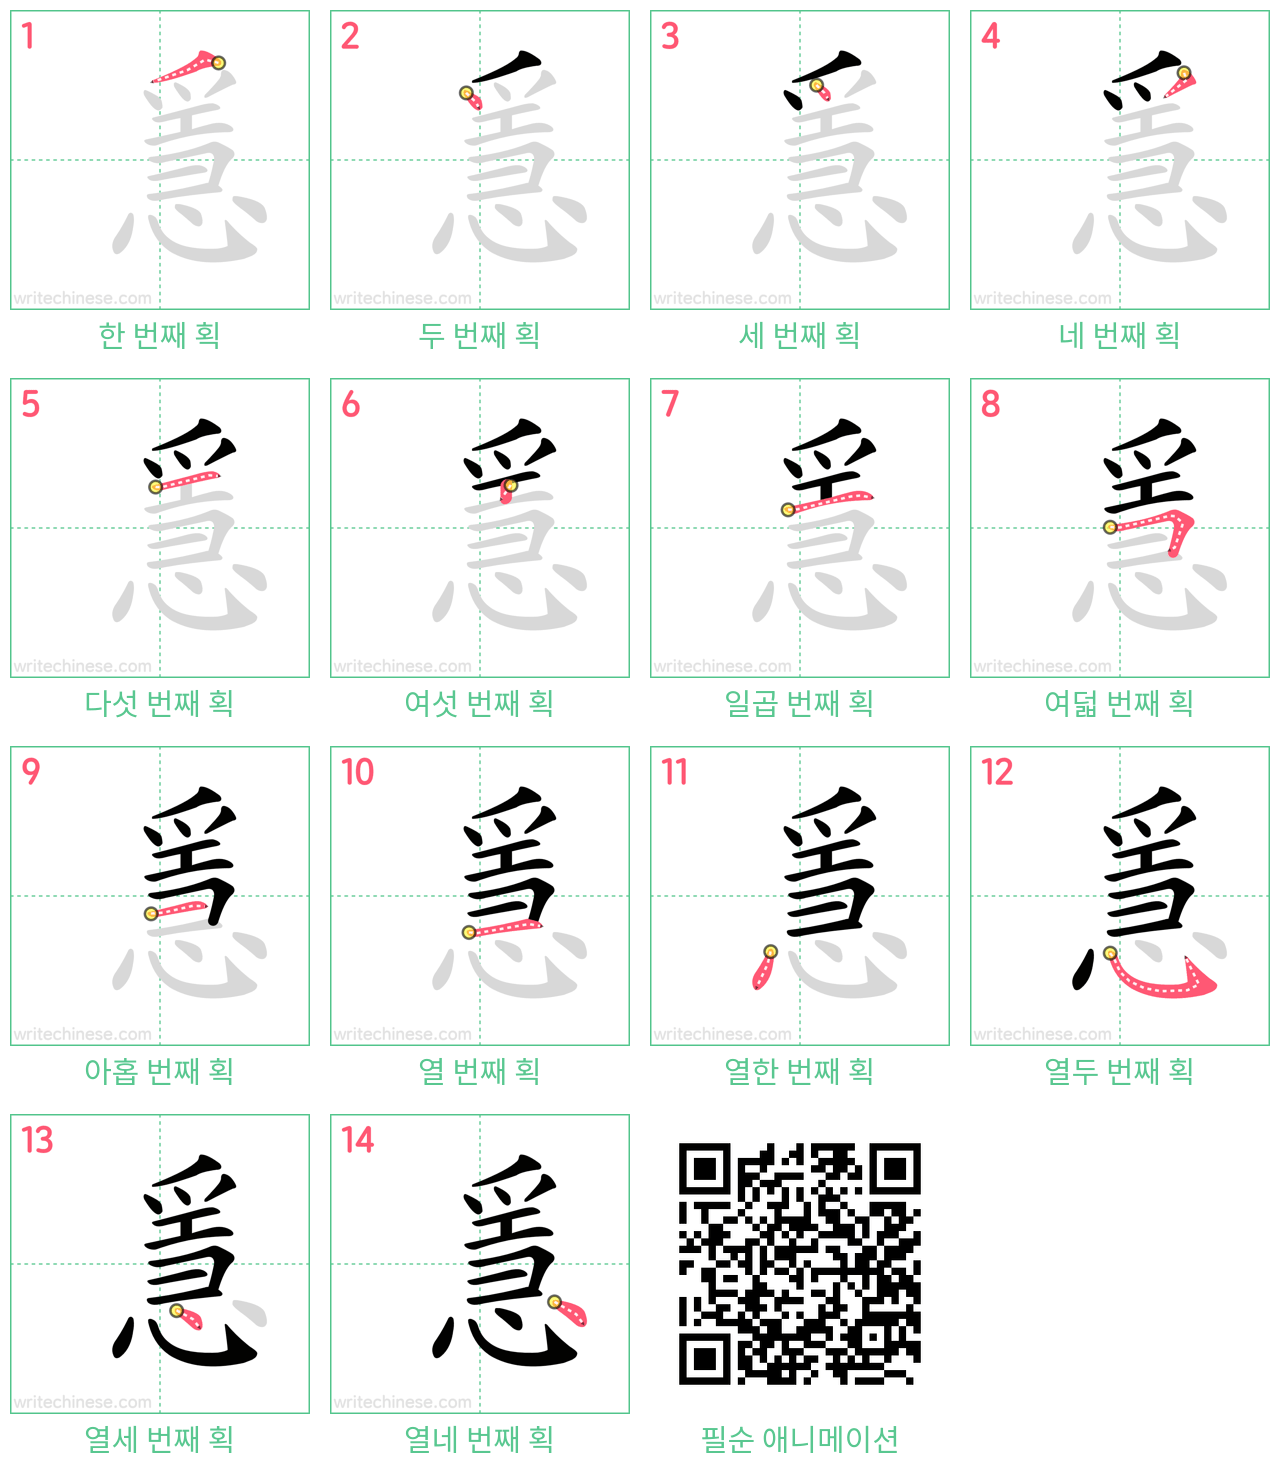 㥯 step-by-step stroke order diagrams